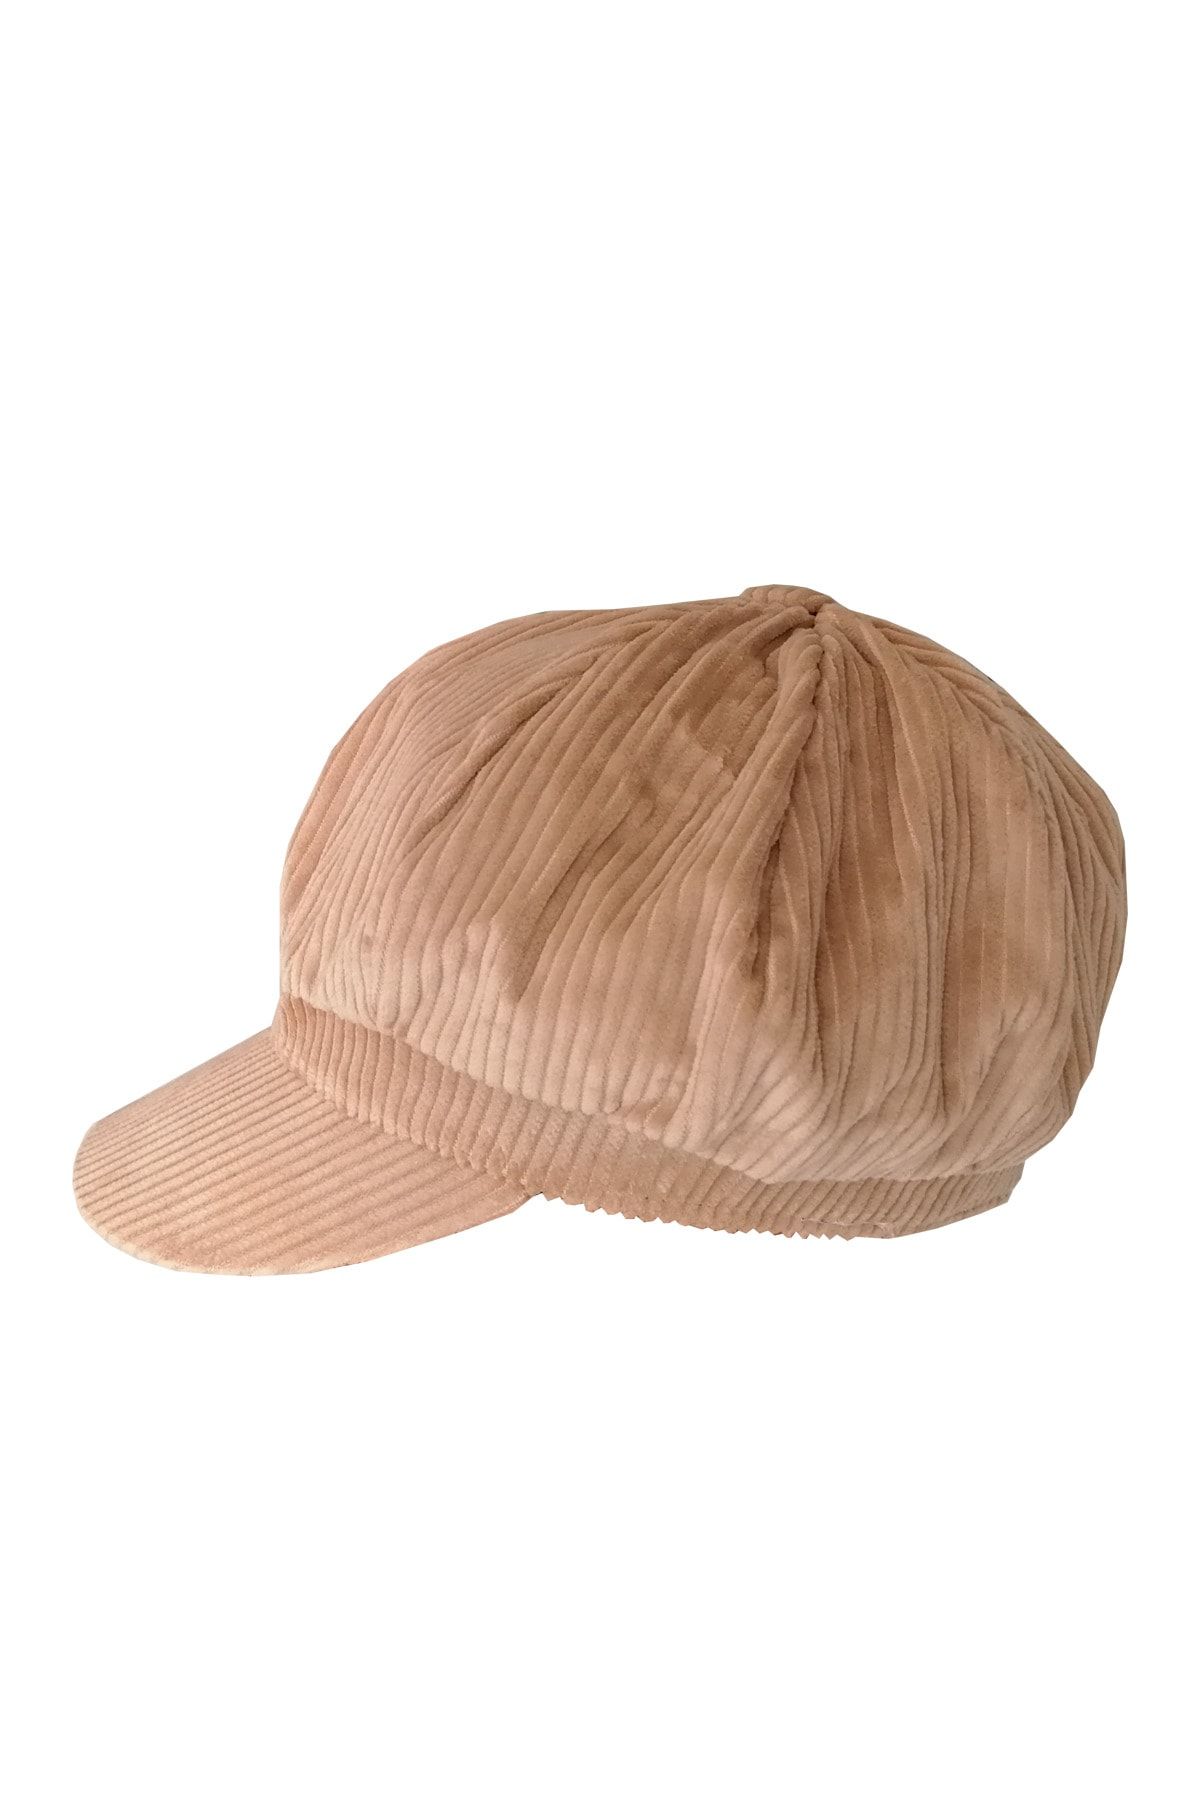 Bay Şapkacı Kadın Denizci Tipi Kadife Şapka 1243 Bej